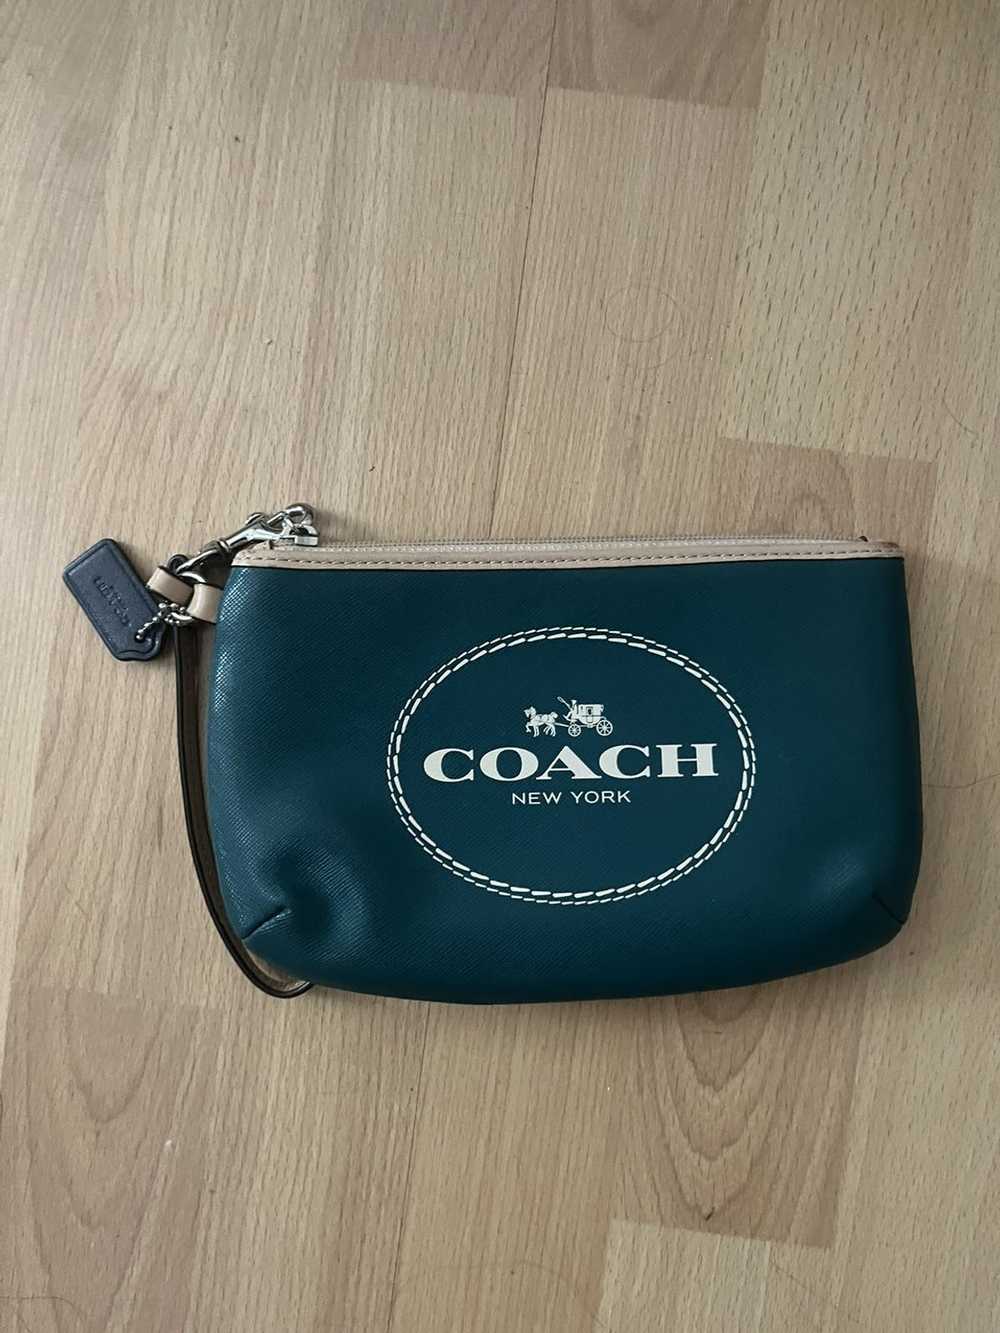 Coach Coach Wristlet - image 1